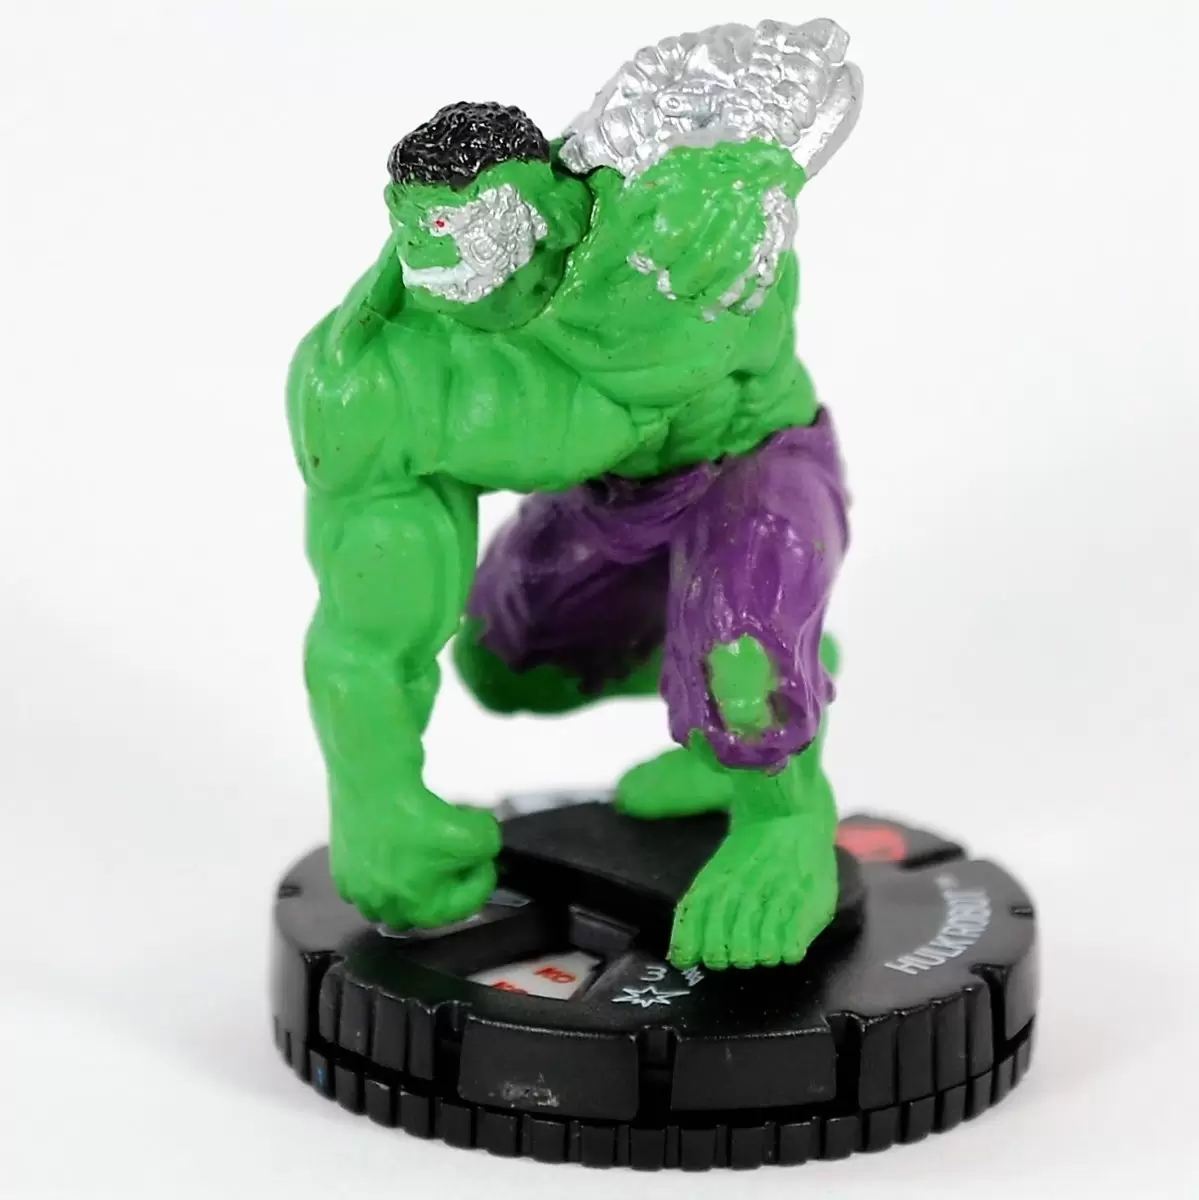 Incredible Hulk - Hulk Robot